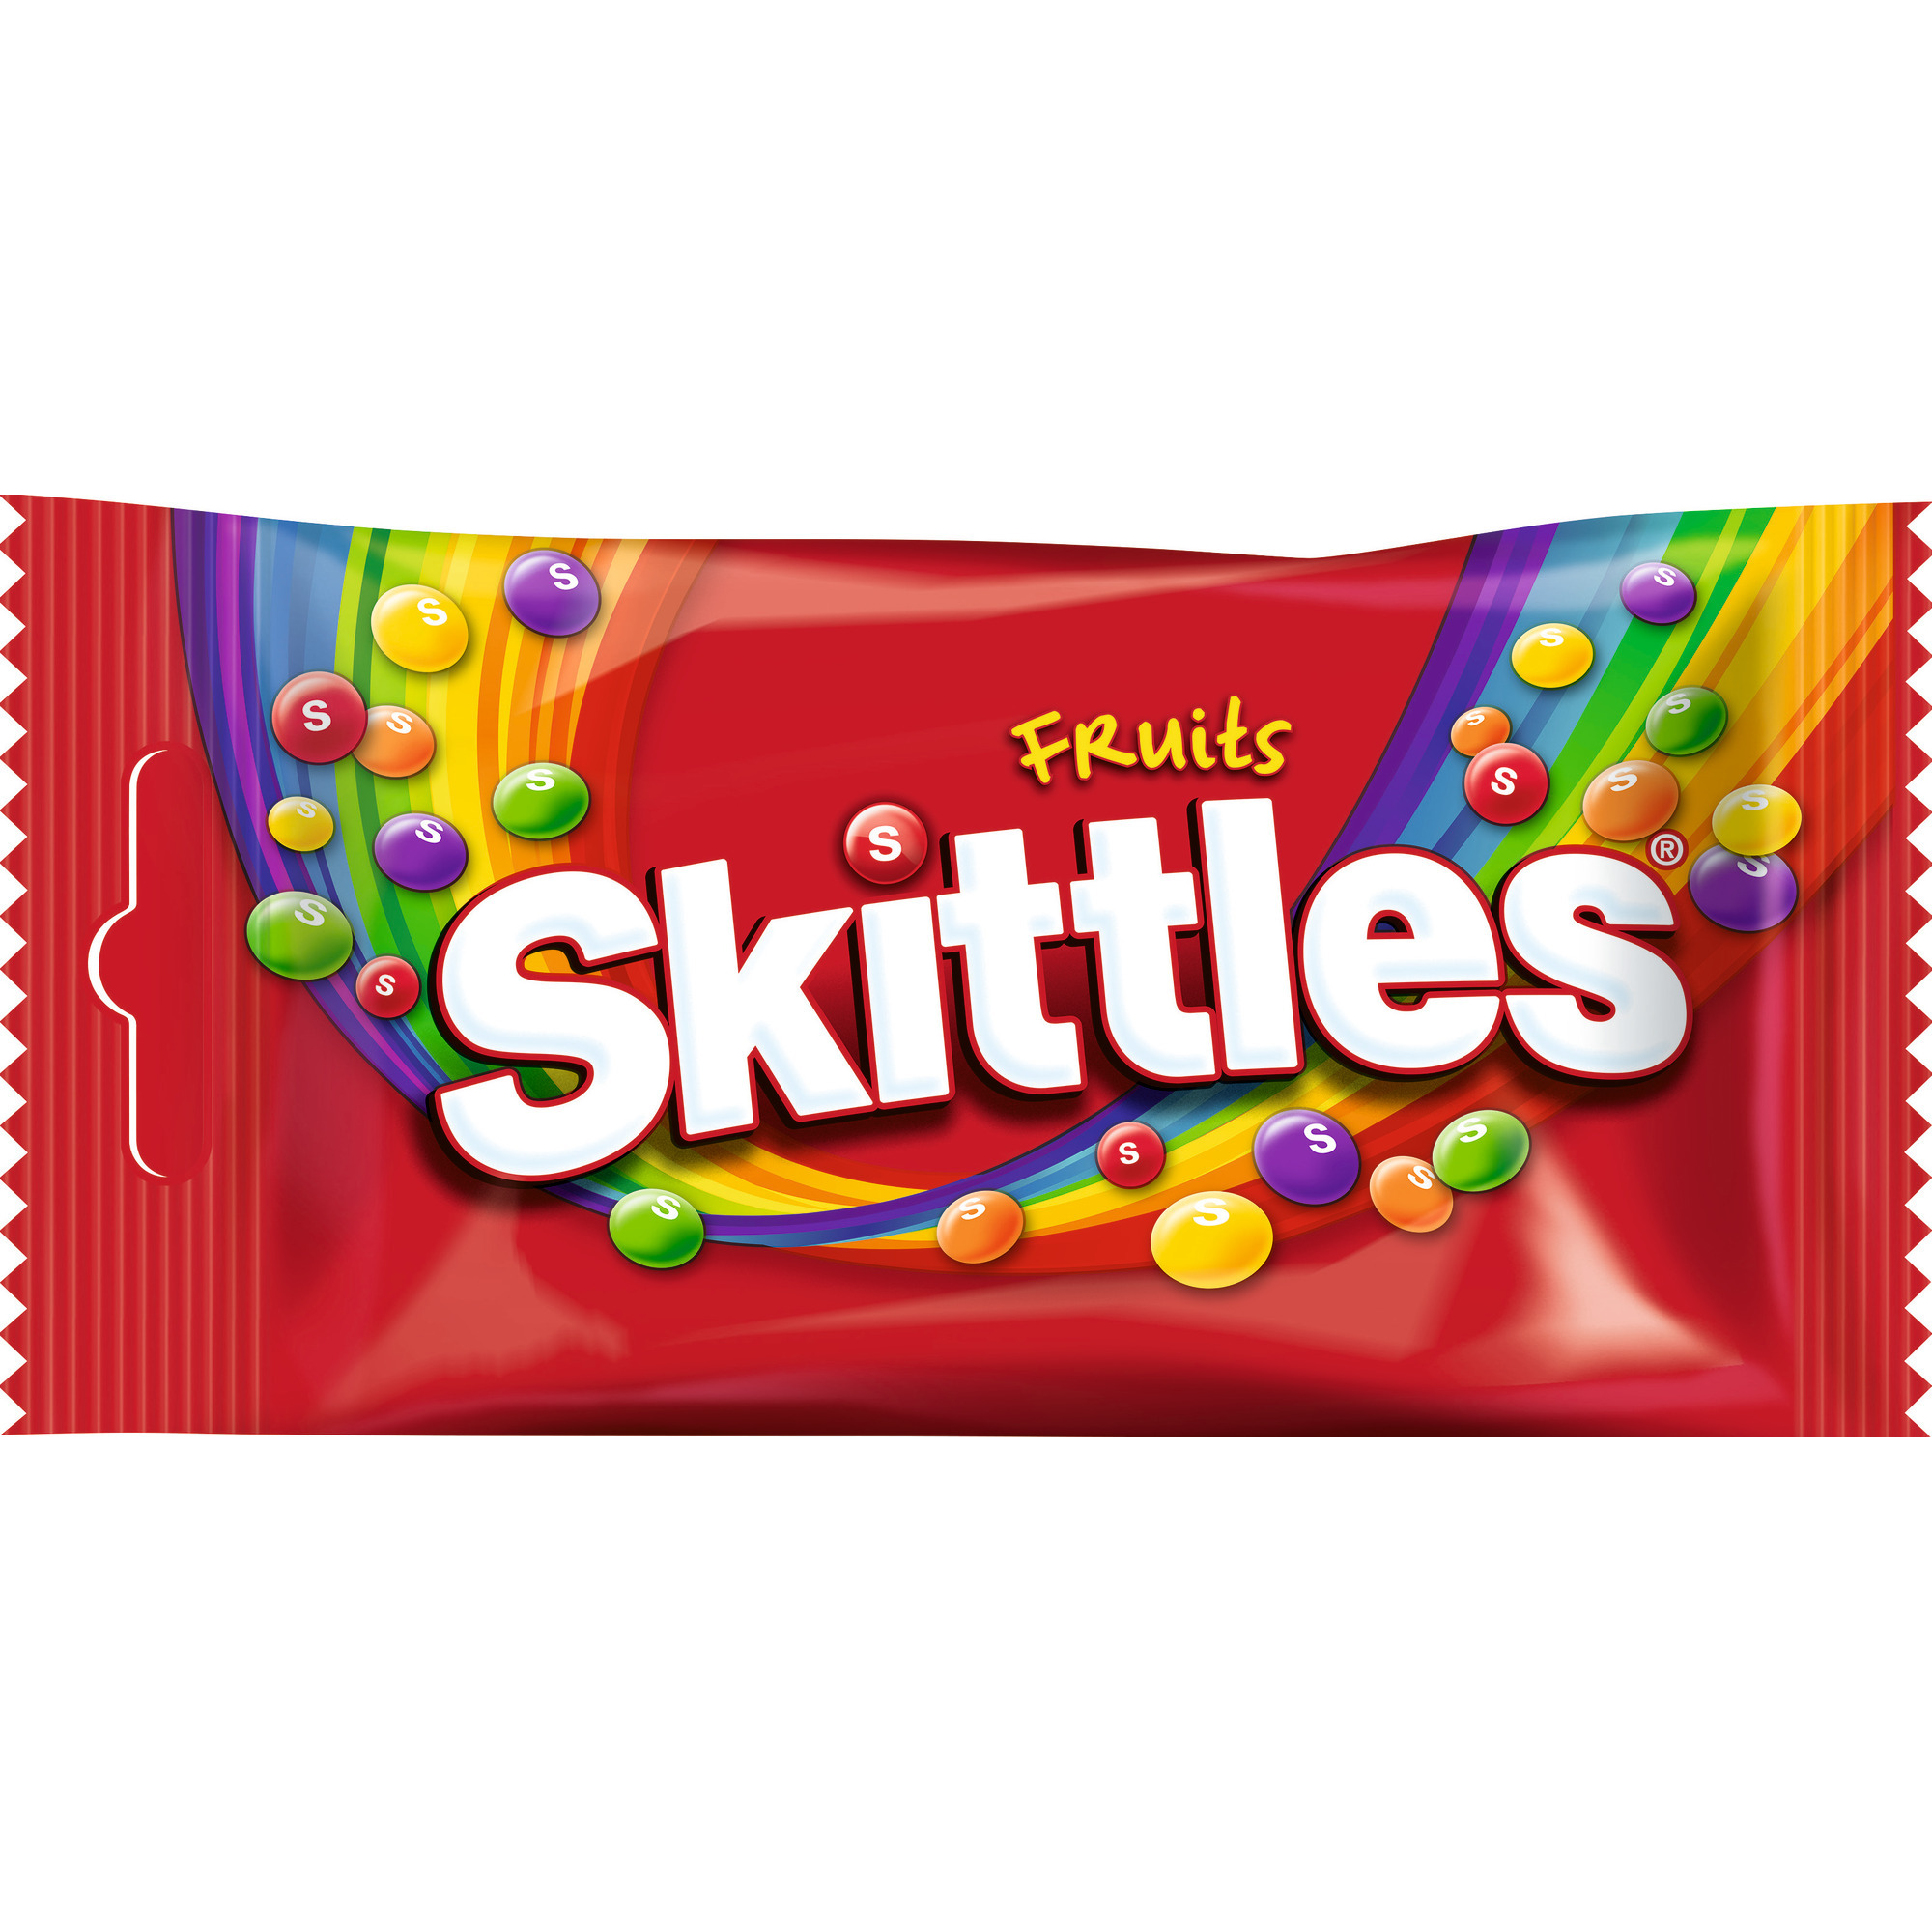 Skittles 38g, Fruits